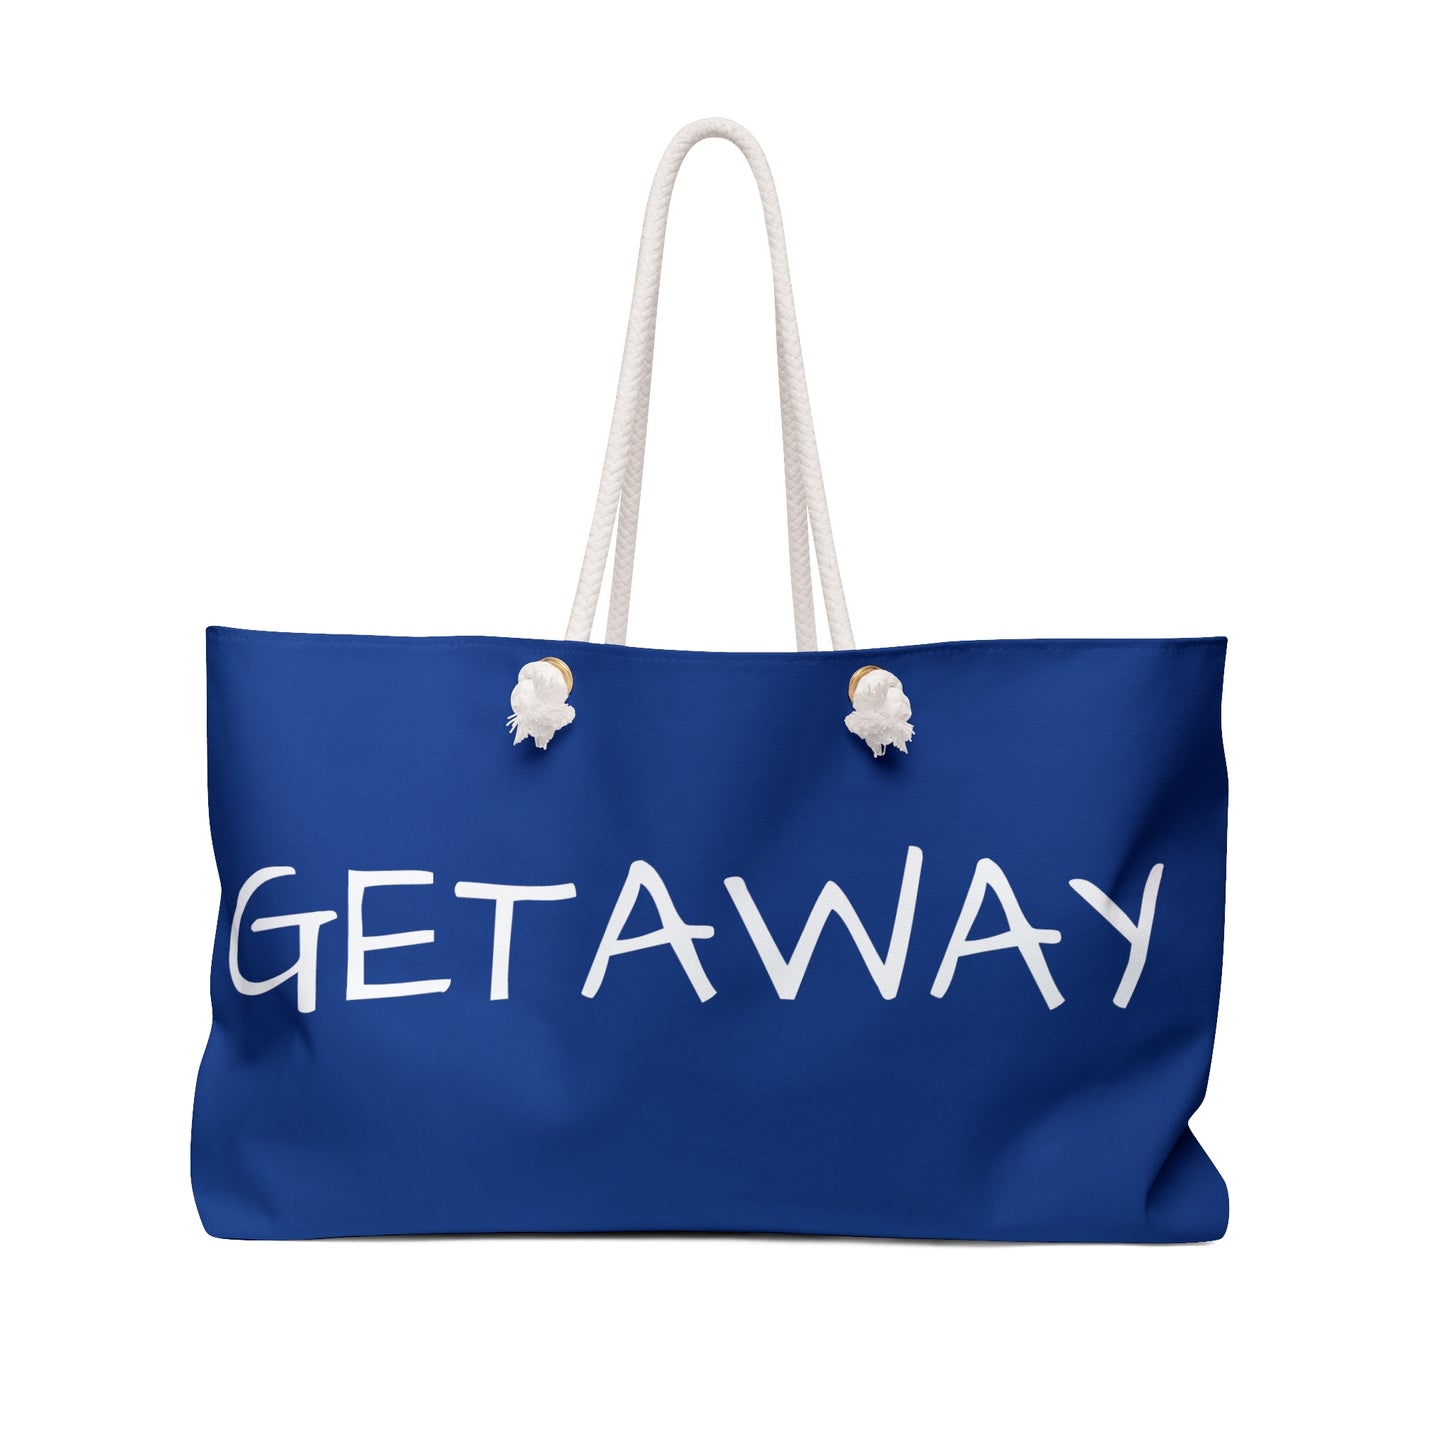 Weekender Tote Bag - Getaway front